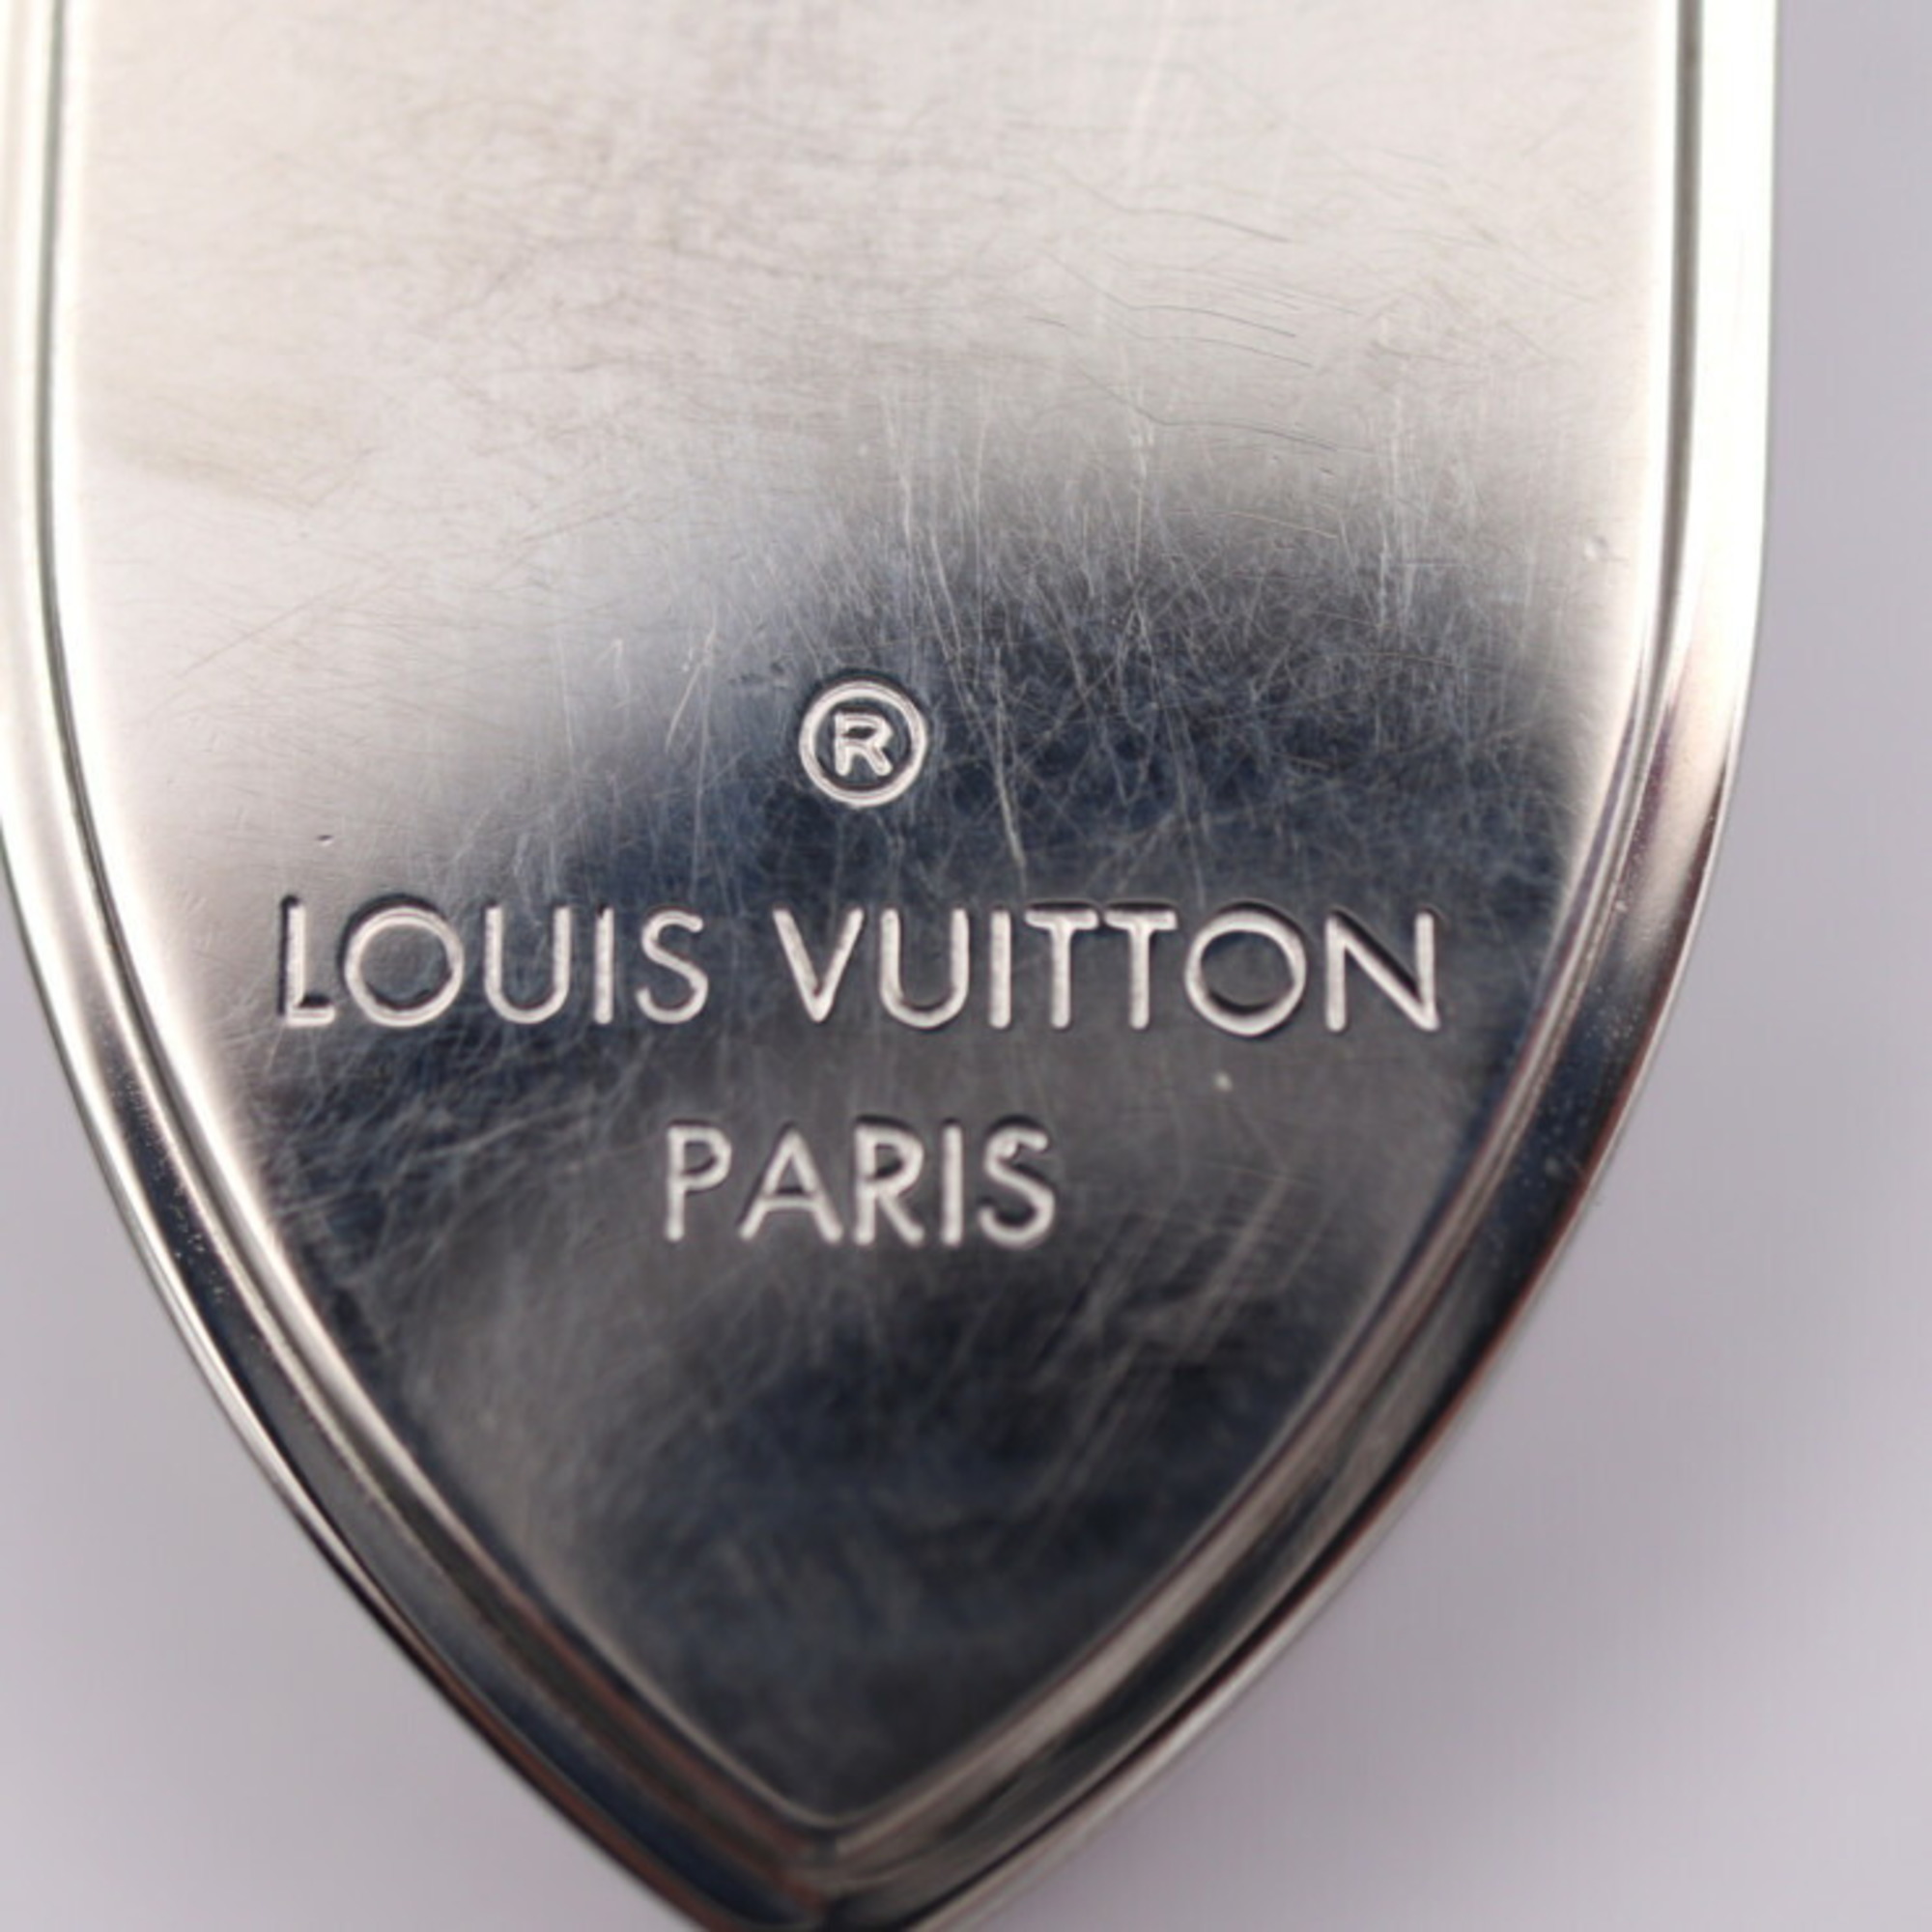 LOUIS VUITTON Louis Vuitton Pens Bier Chaine Ozive Money Clip M66203 Metal Silver Keychain Chain Wallet